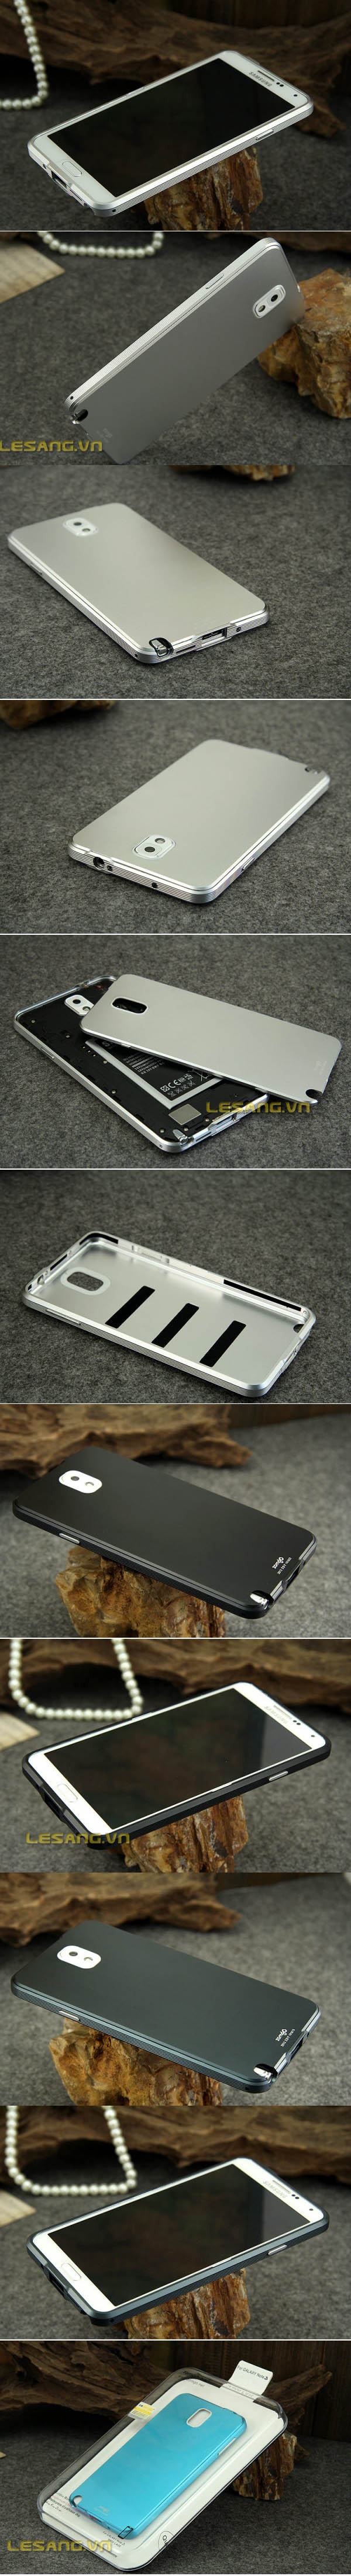 Ốp lưng Note 3 Zomgo kim loại nhôm Aluminum tuyệt đẹp - 6